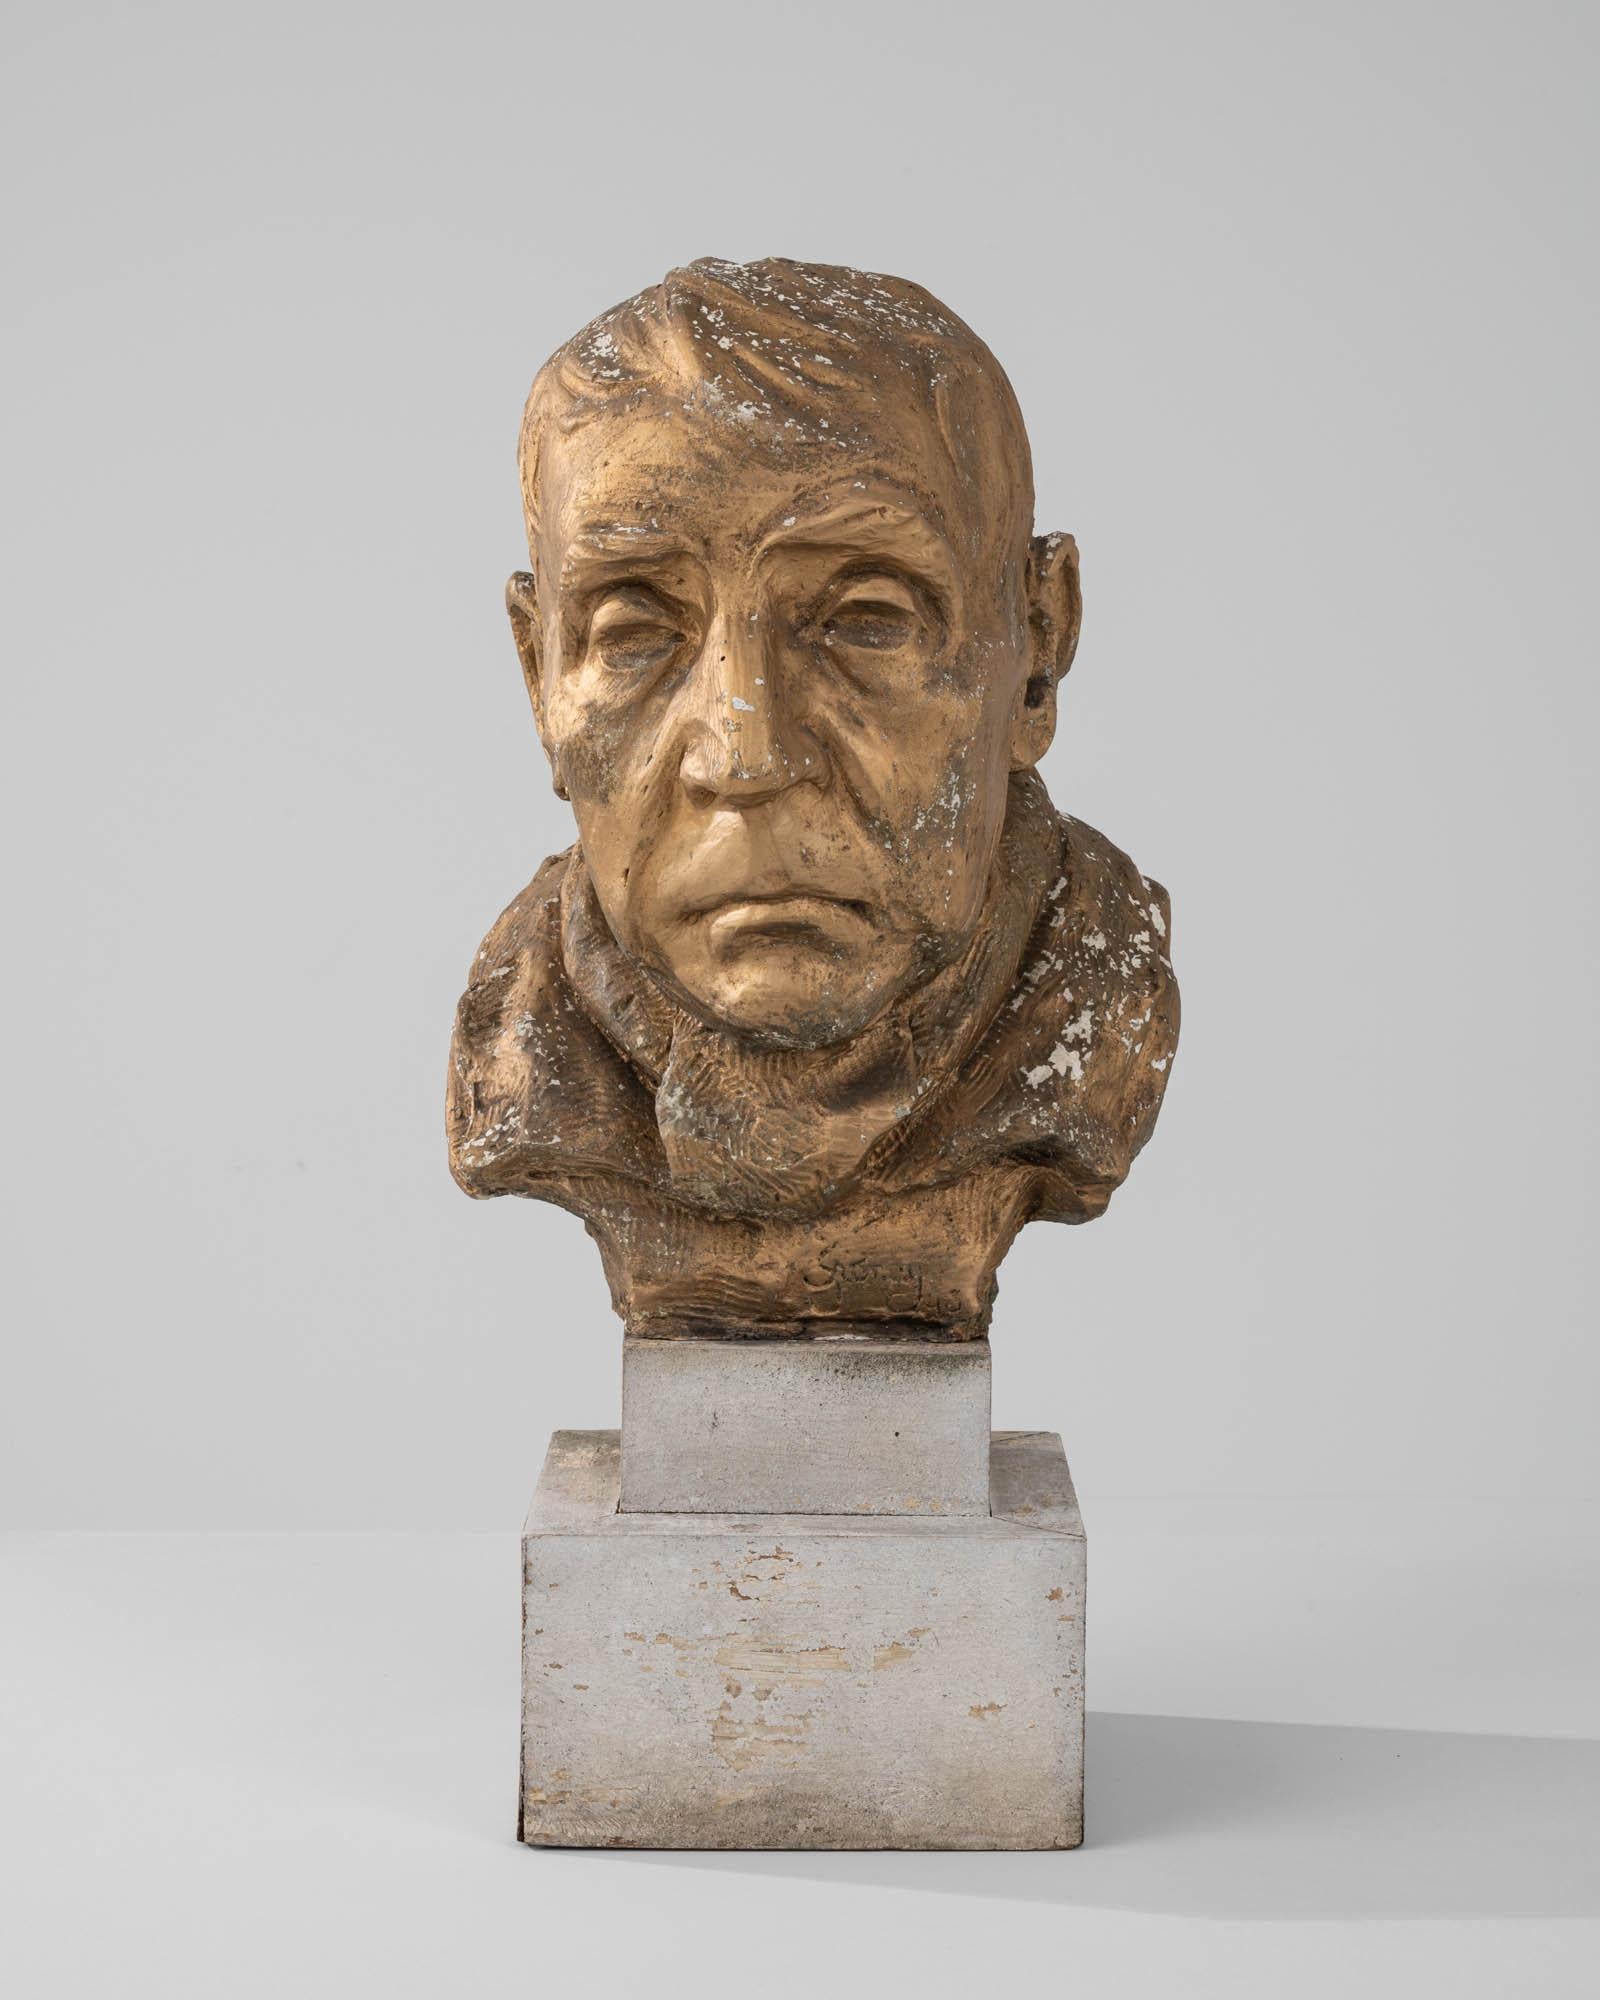 Sculpté dans l'Europe du XXe siècle, ce buste en plâtre représente un homme âgé dont les traits du visage sont méticuleusement travaillés - l'arc de ses sourcils broussailleux, les coins de sa bouche rabattus et les rides profondes qui tracent les